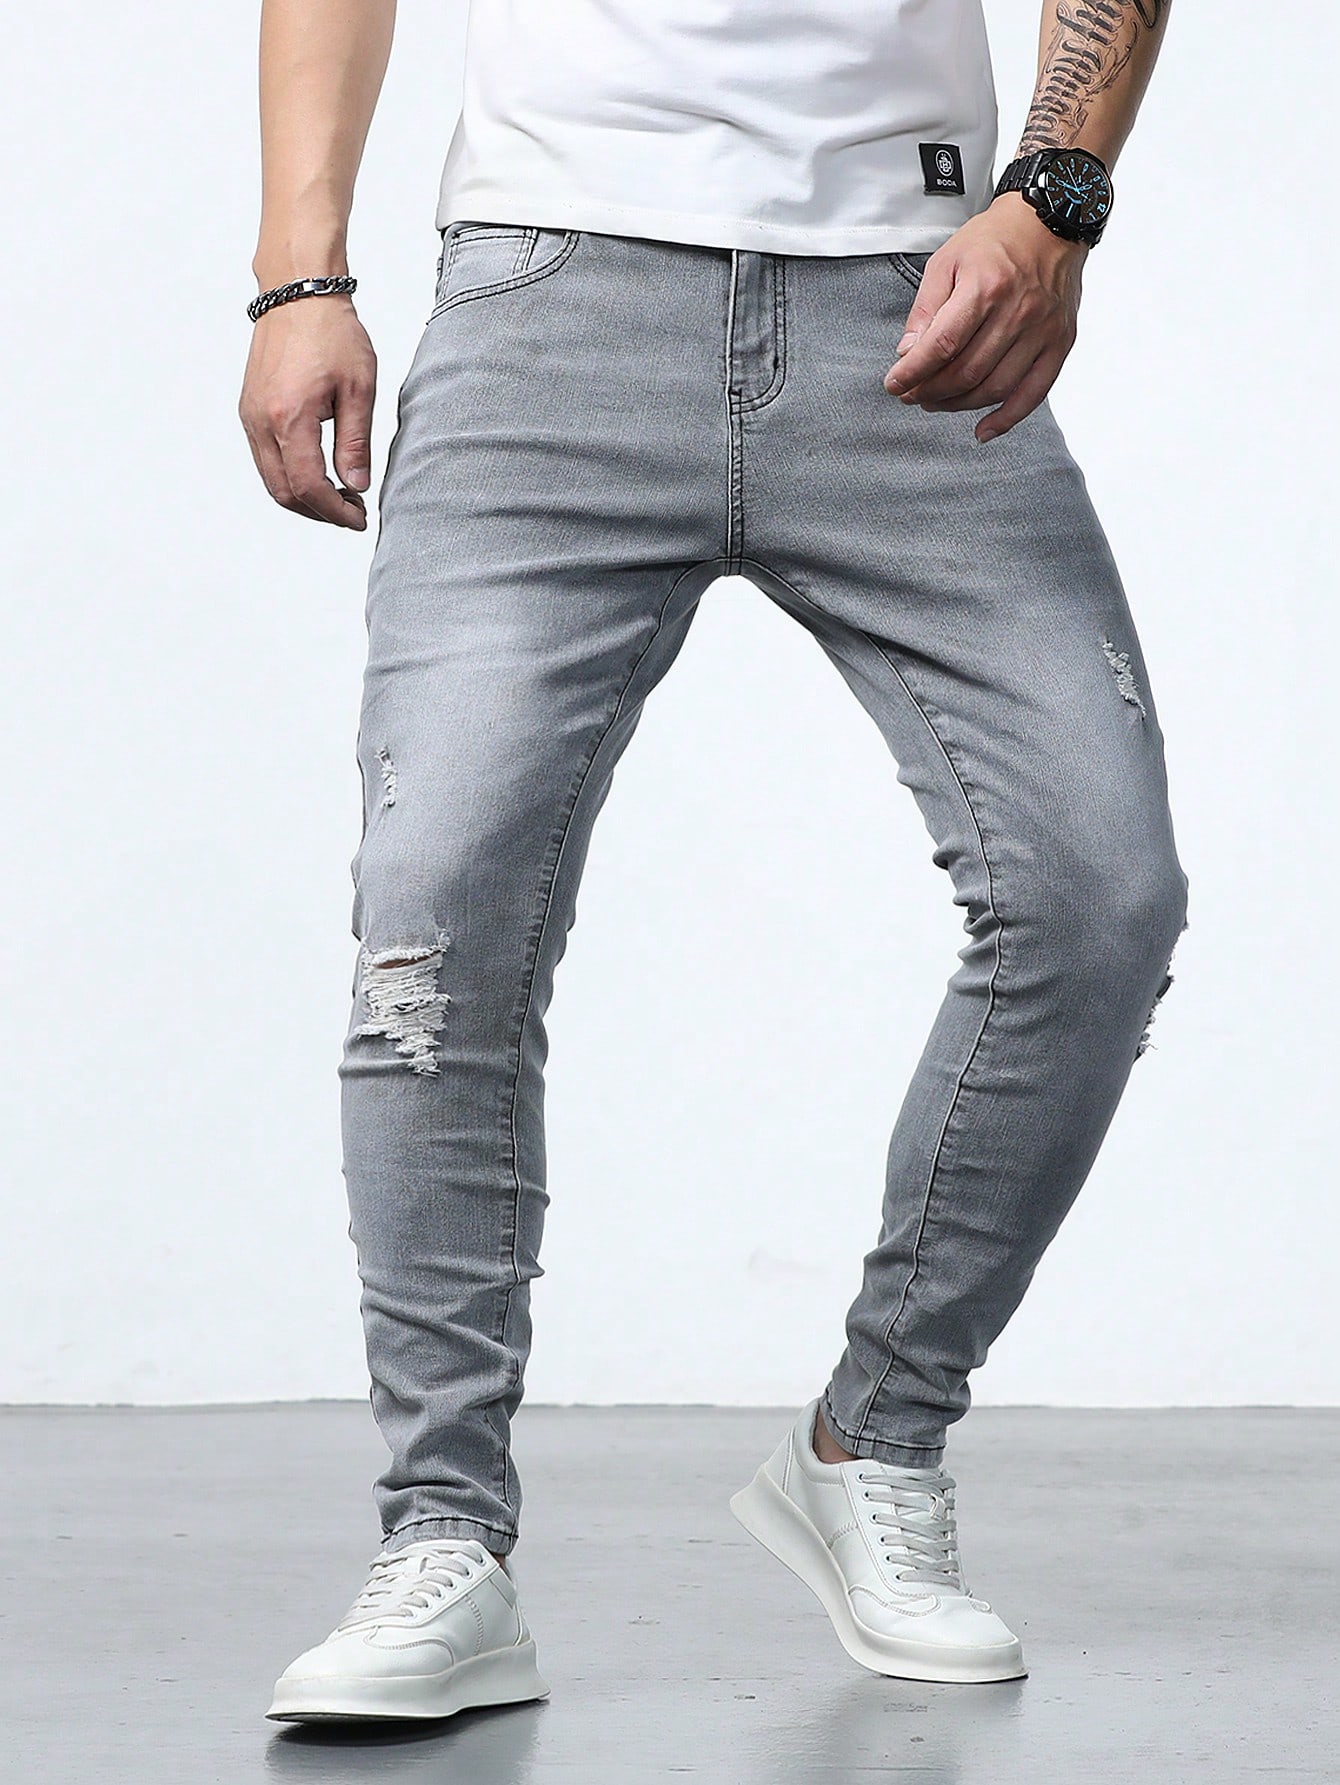 Мужские джинсы скинни с потертостями Manfinity Homme, серый джинсы colin s с потертостями 44 размер